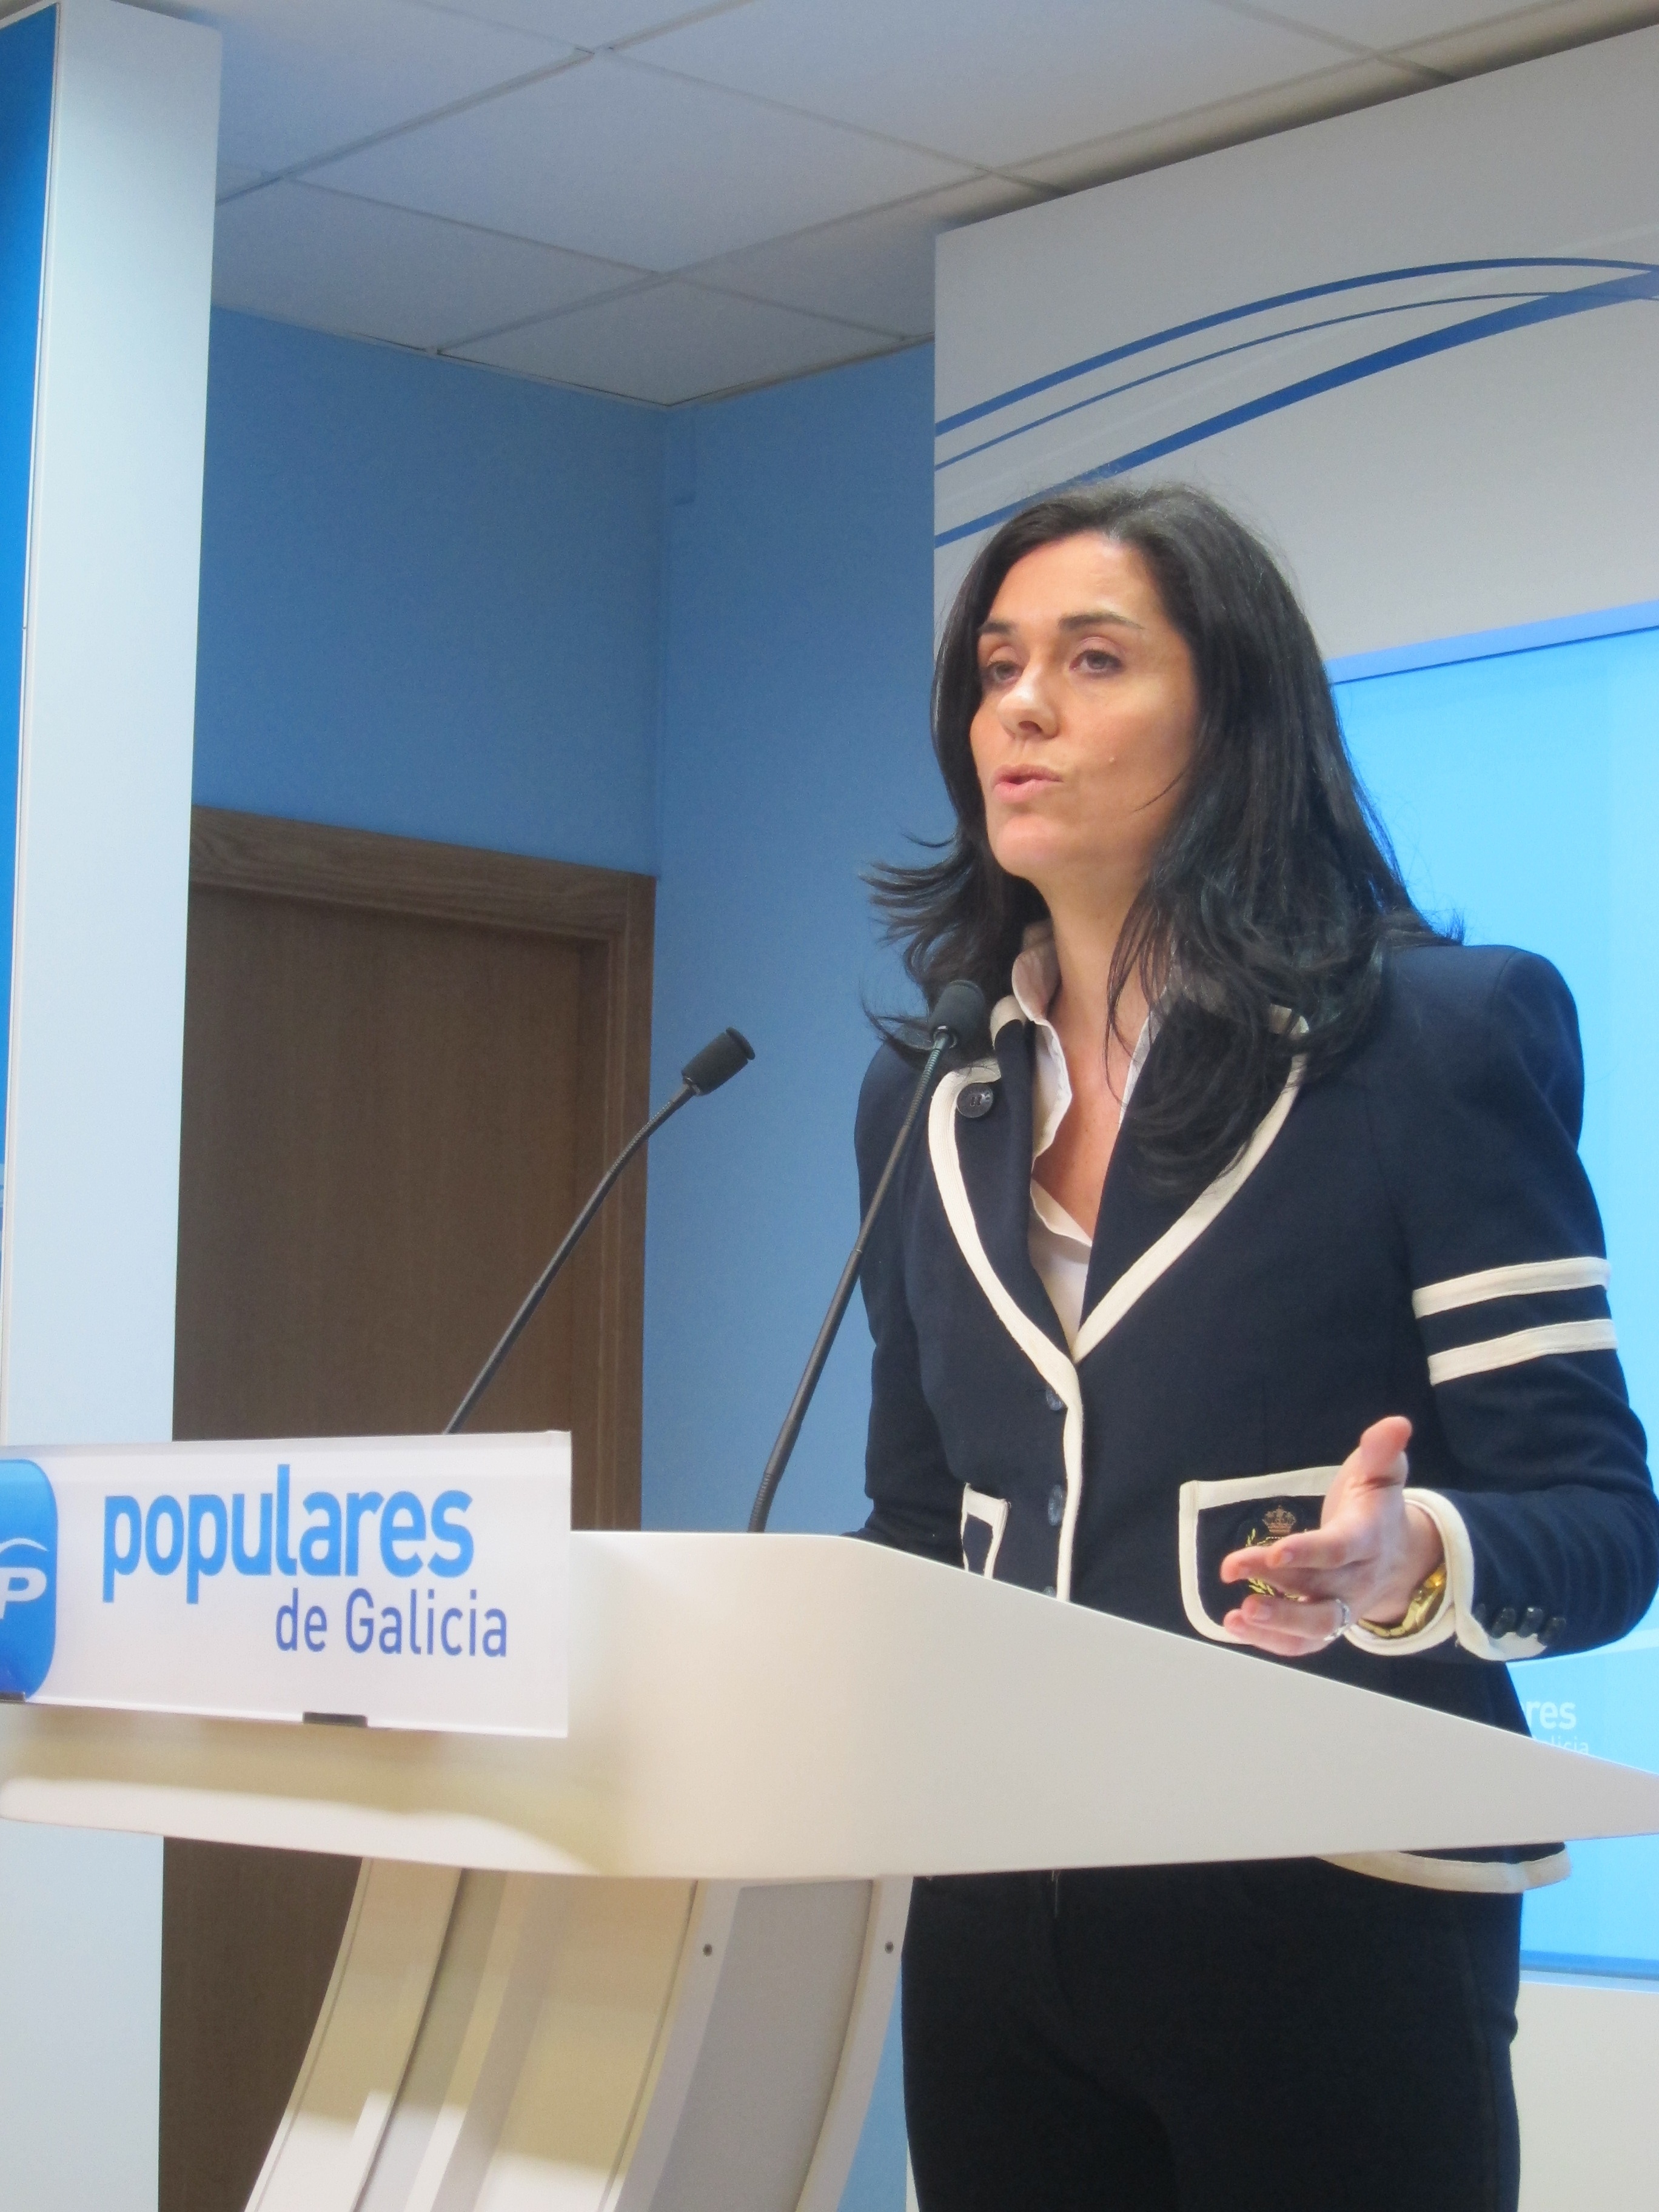 La cúpula popular gallega recuerda que quien «cumpla los requisitos» puede concurrir al congreso del PP orensano